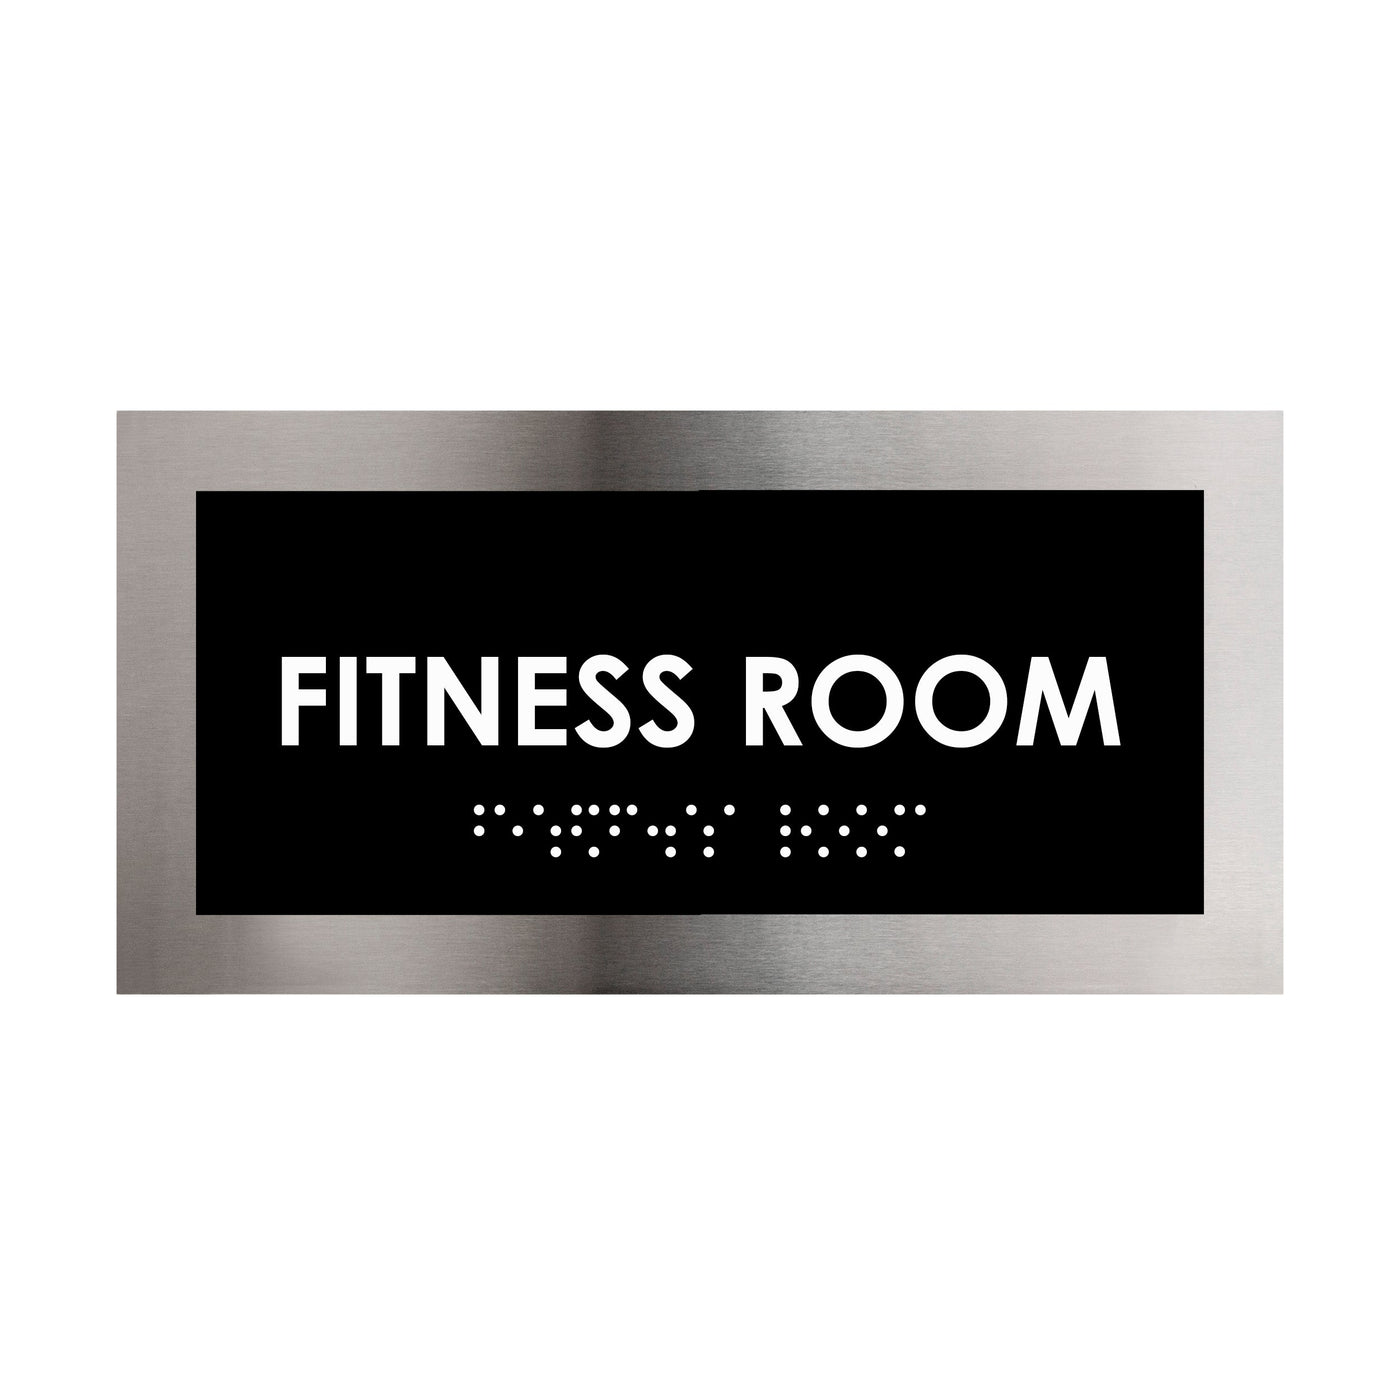 Door Signs - Fitness Room Door Plate - Stainless Steel Sign - "Modern" Design